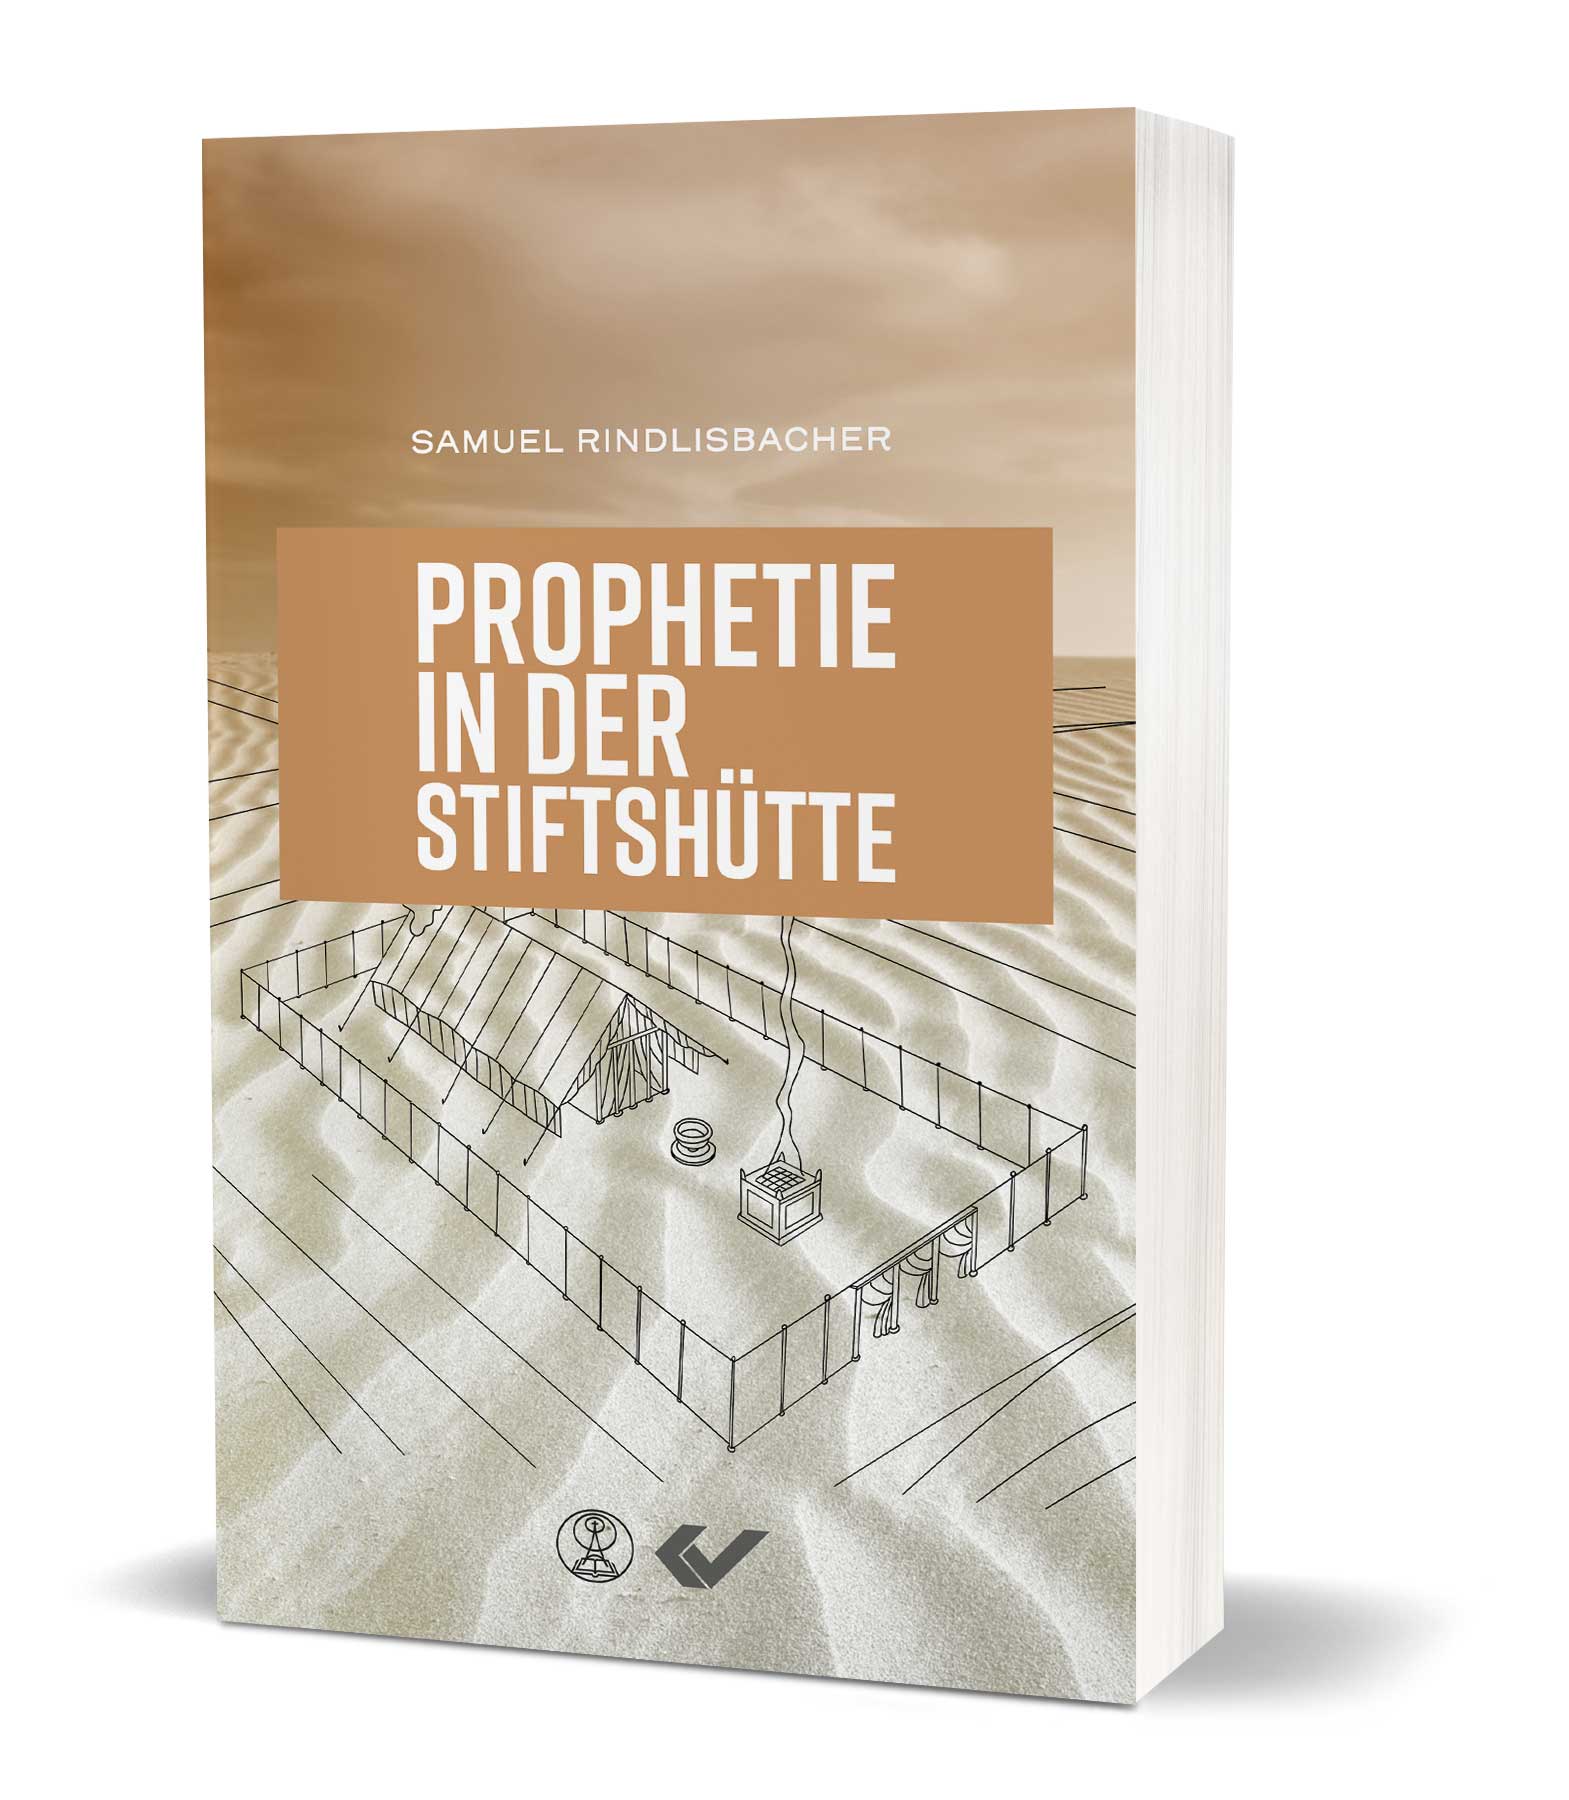 Samuel Rindlisbacher: Prophetie in der Stiftshütte